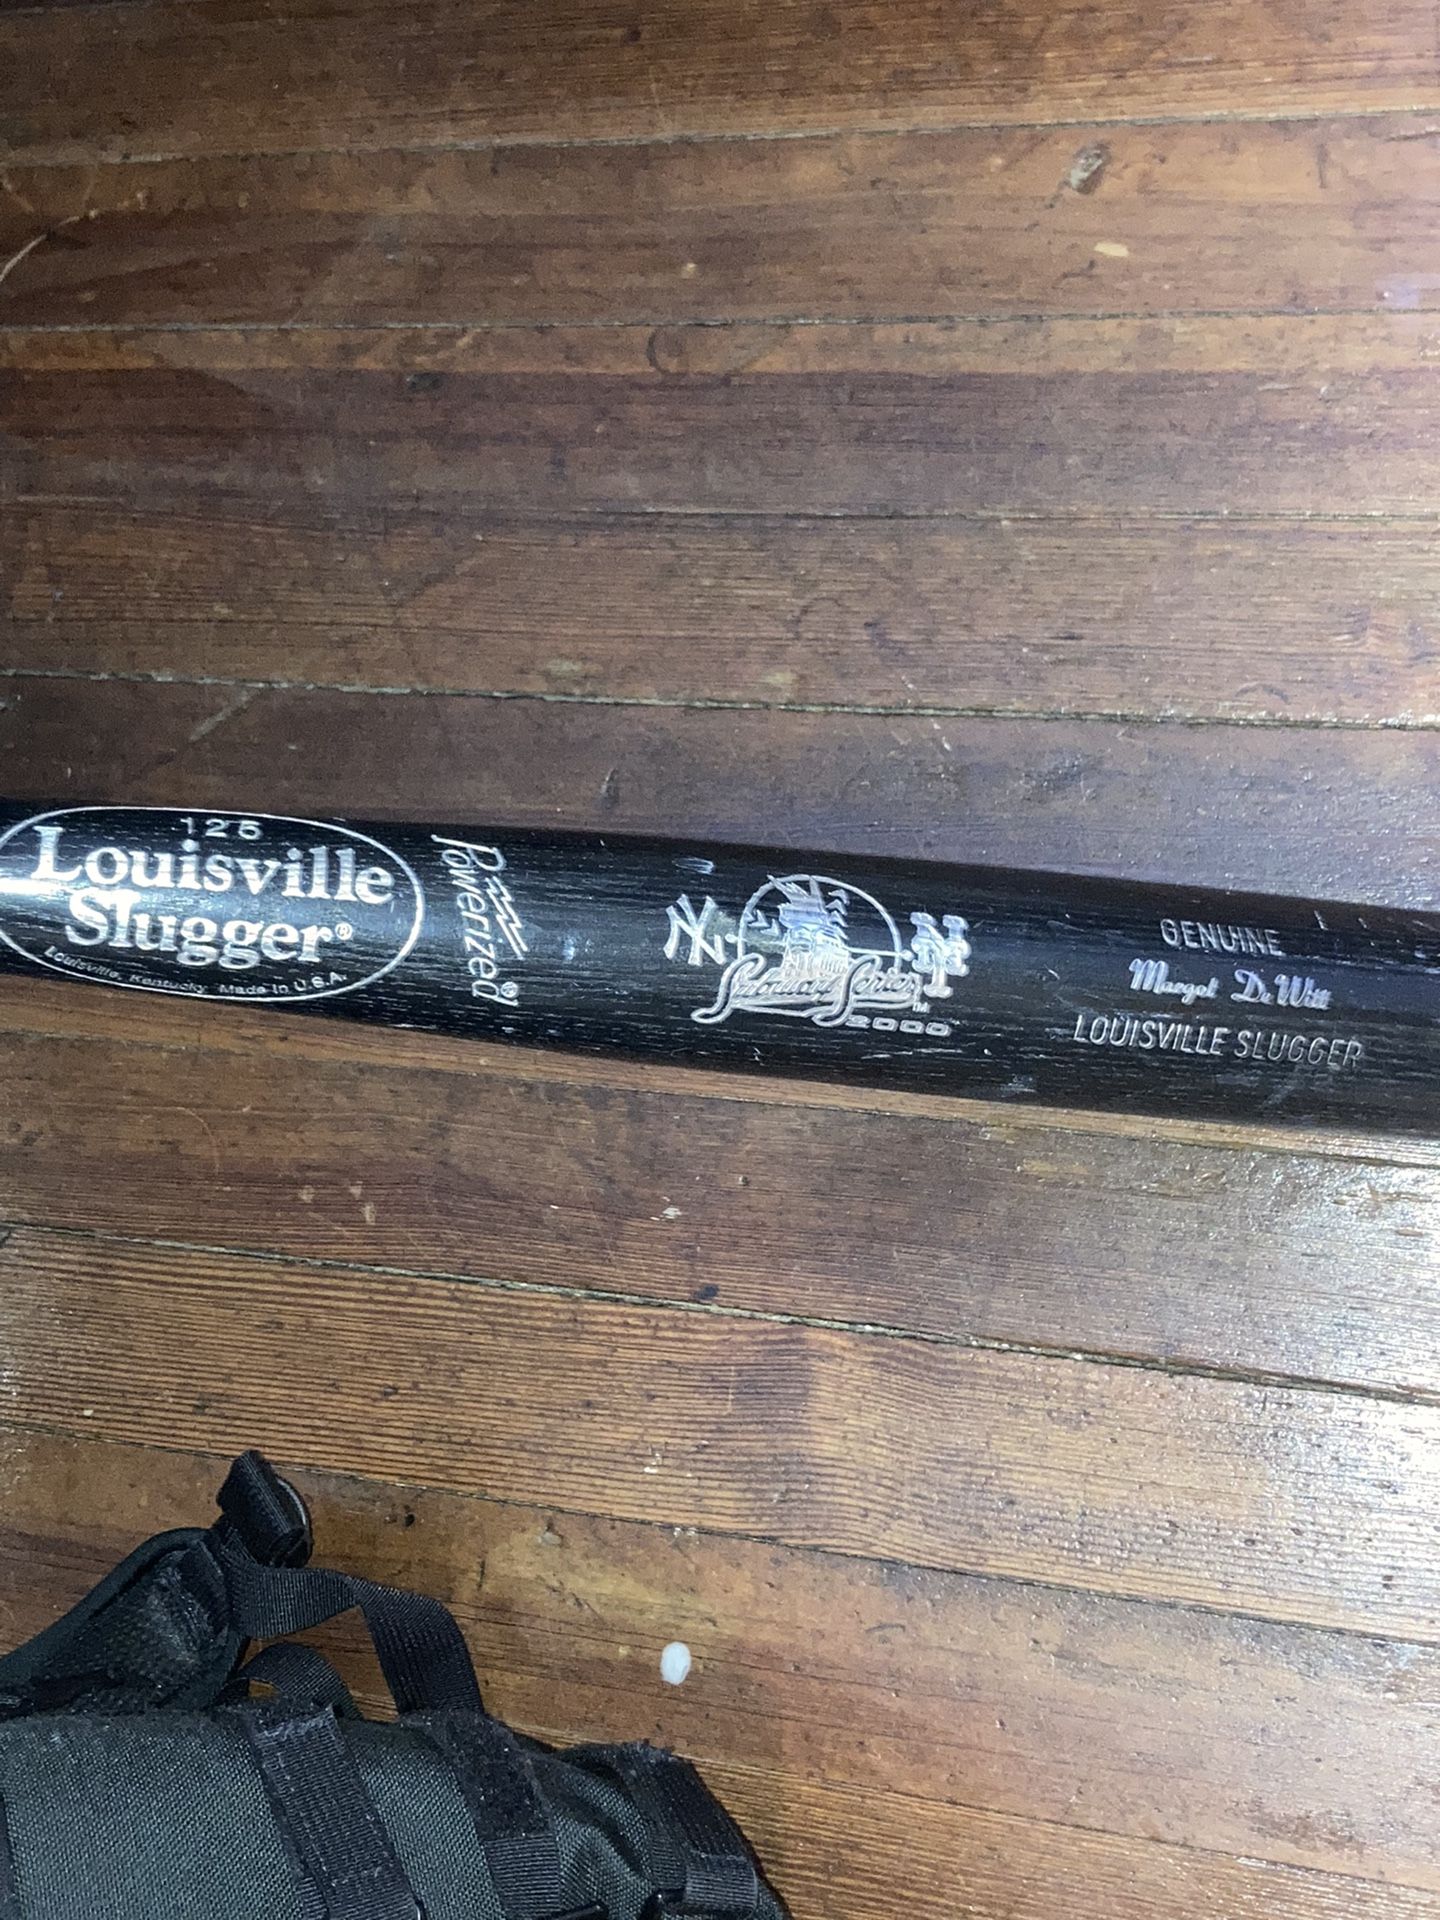 Louisville Slugger Yankees Mets Subway Series 2000